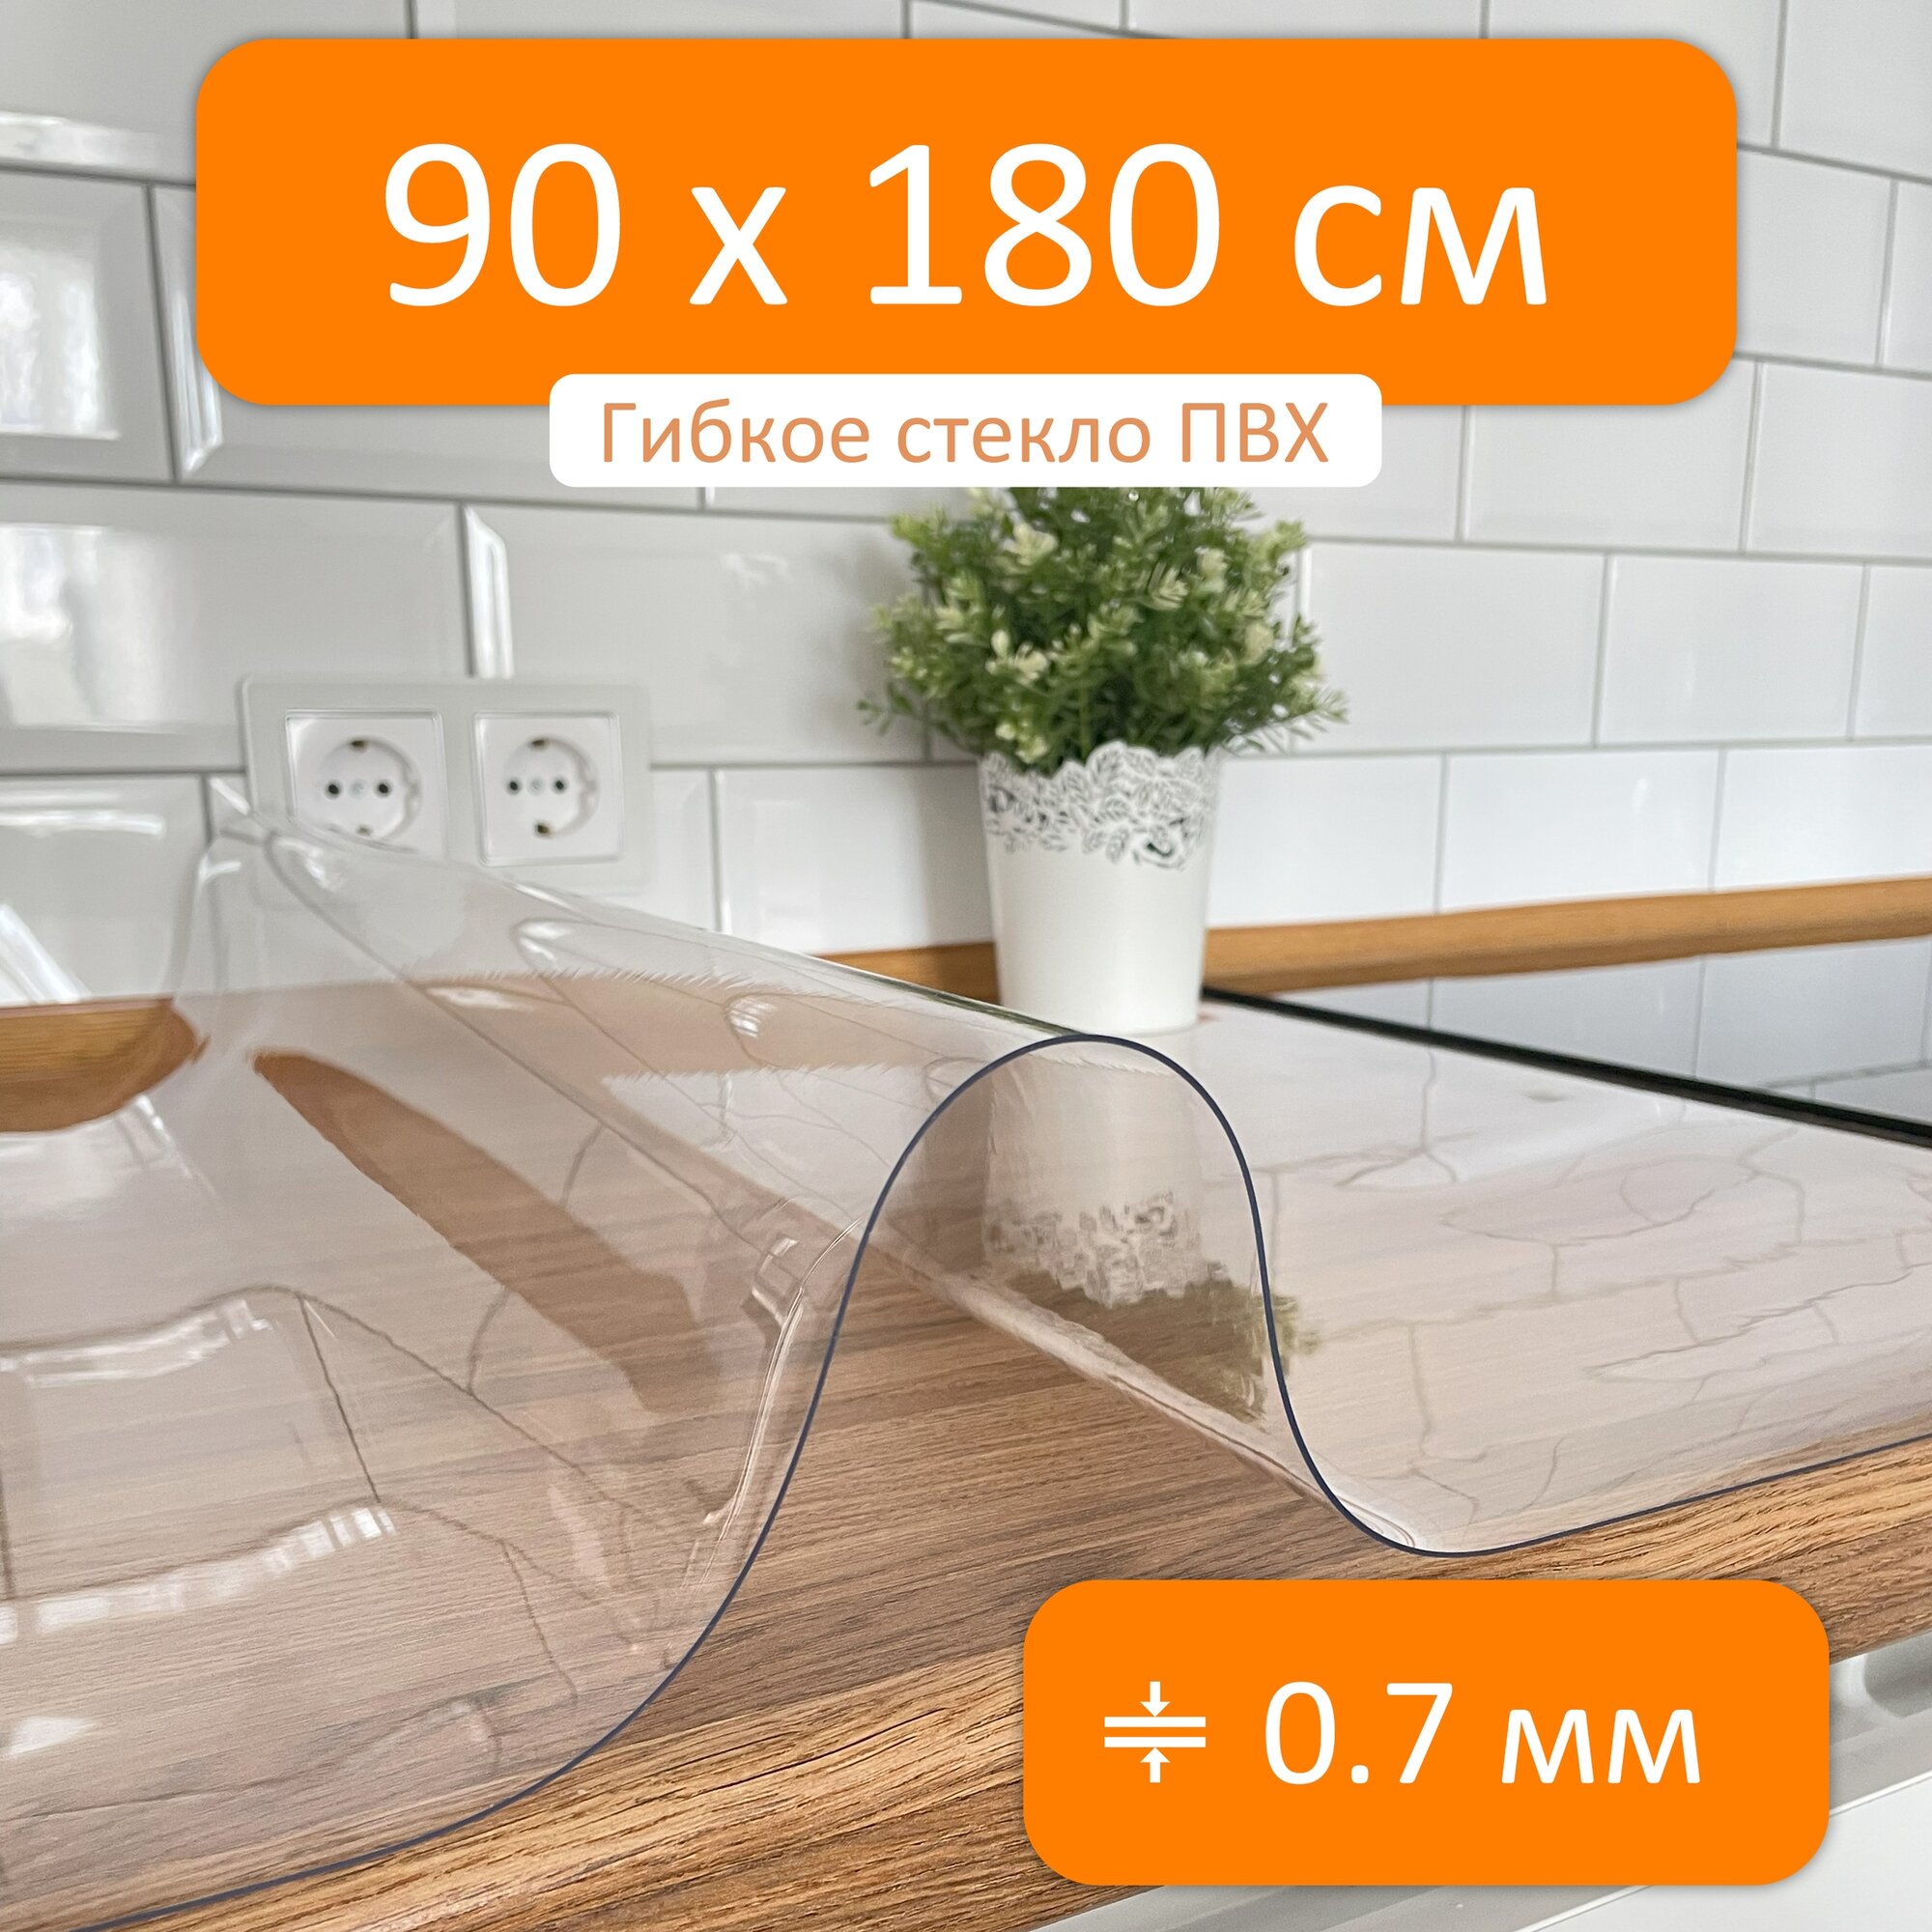 Гибкое стекло 100x170 см толщина 0.7 мм скатерть силиконовая